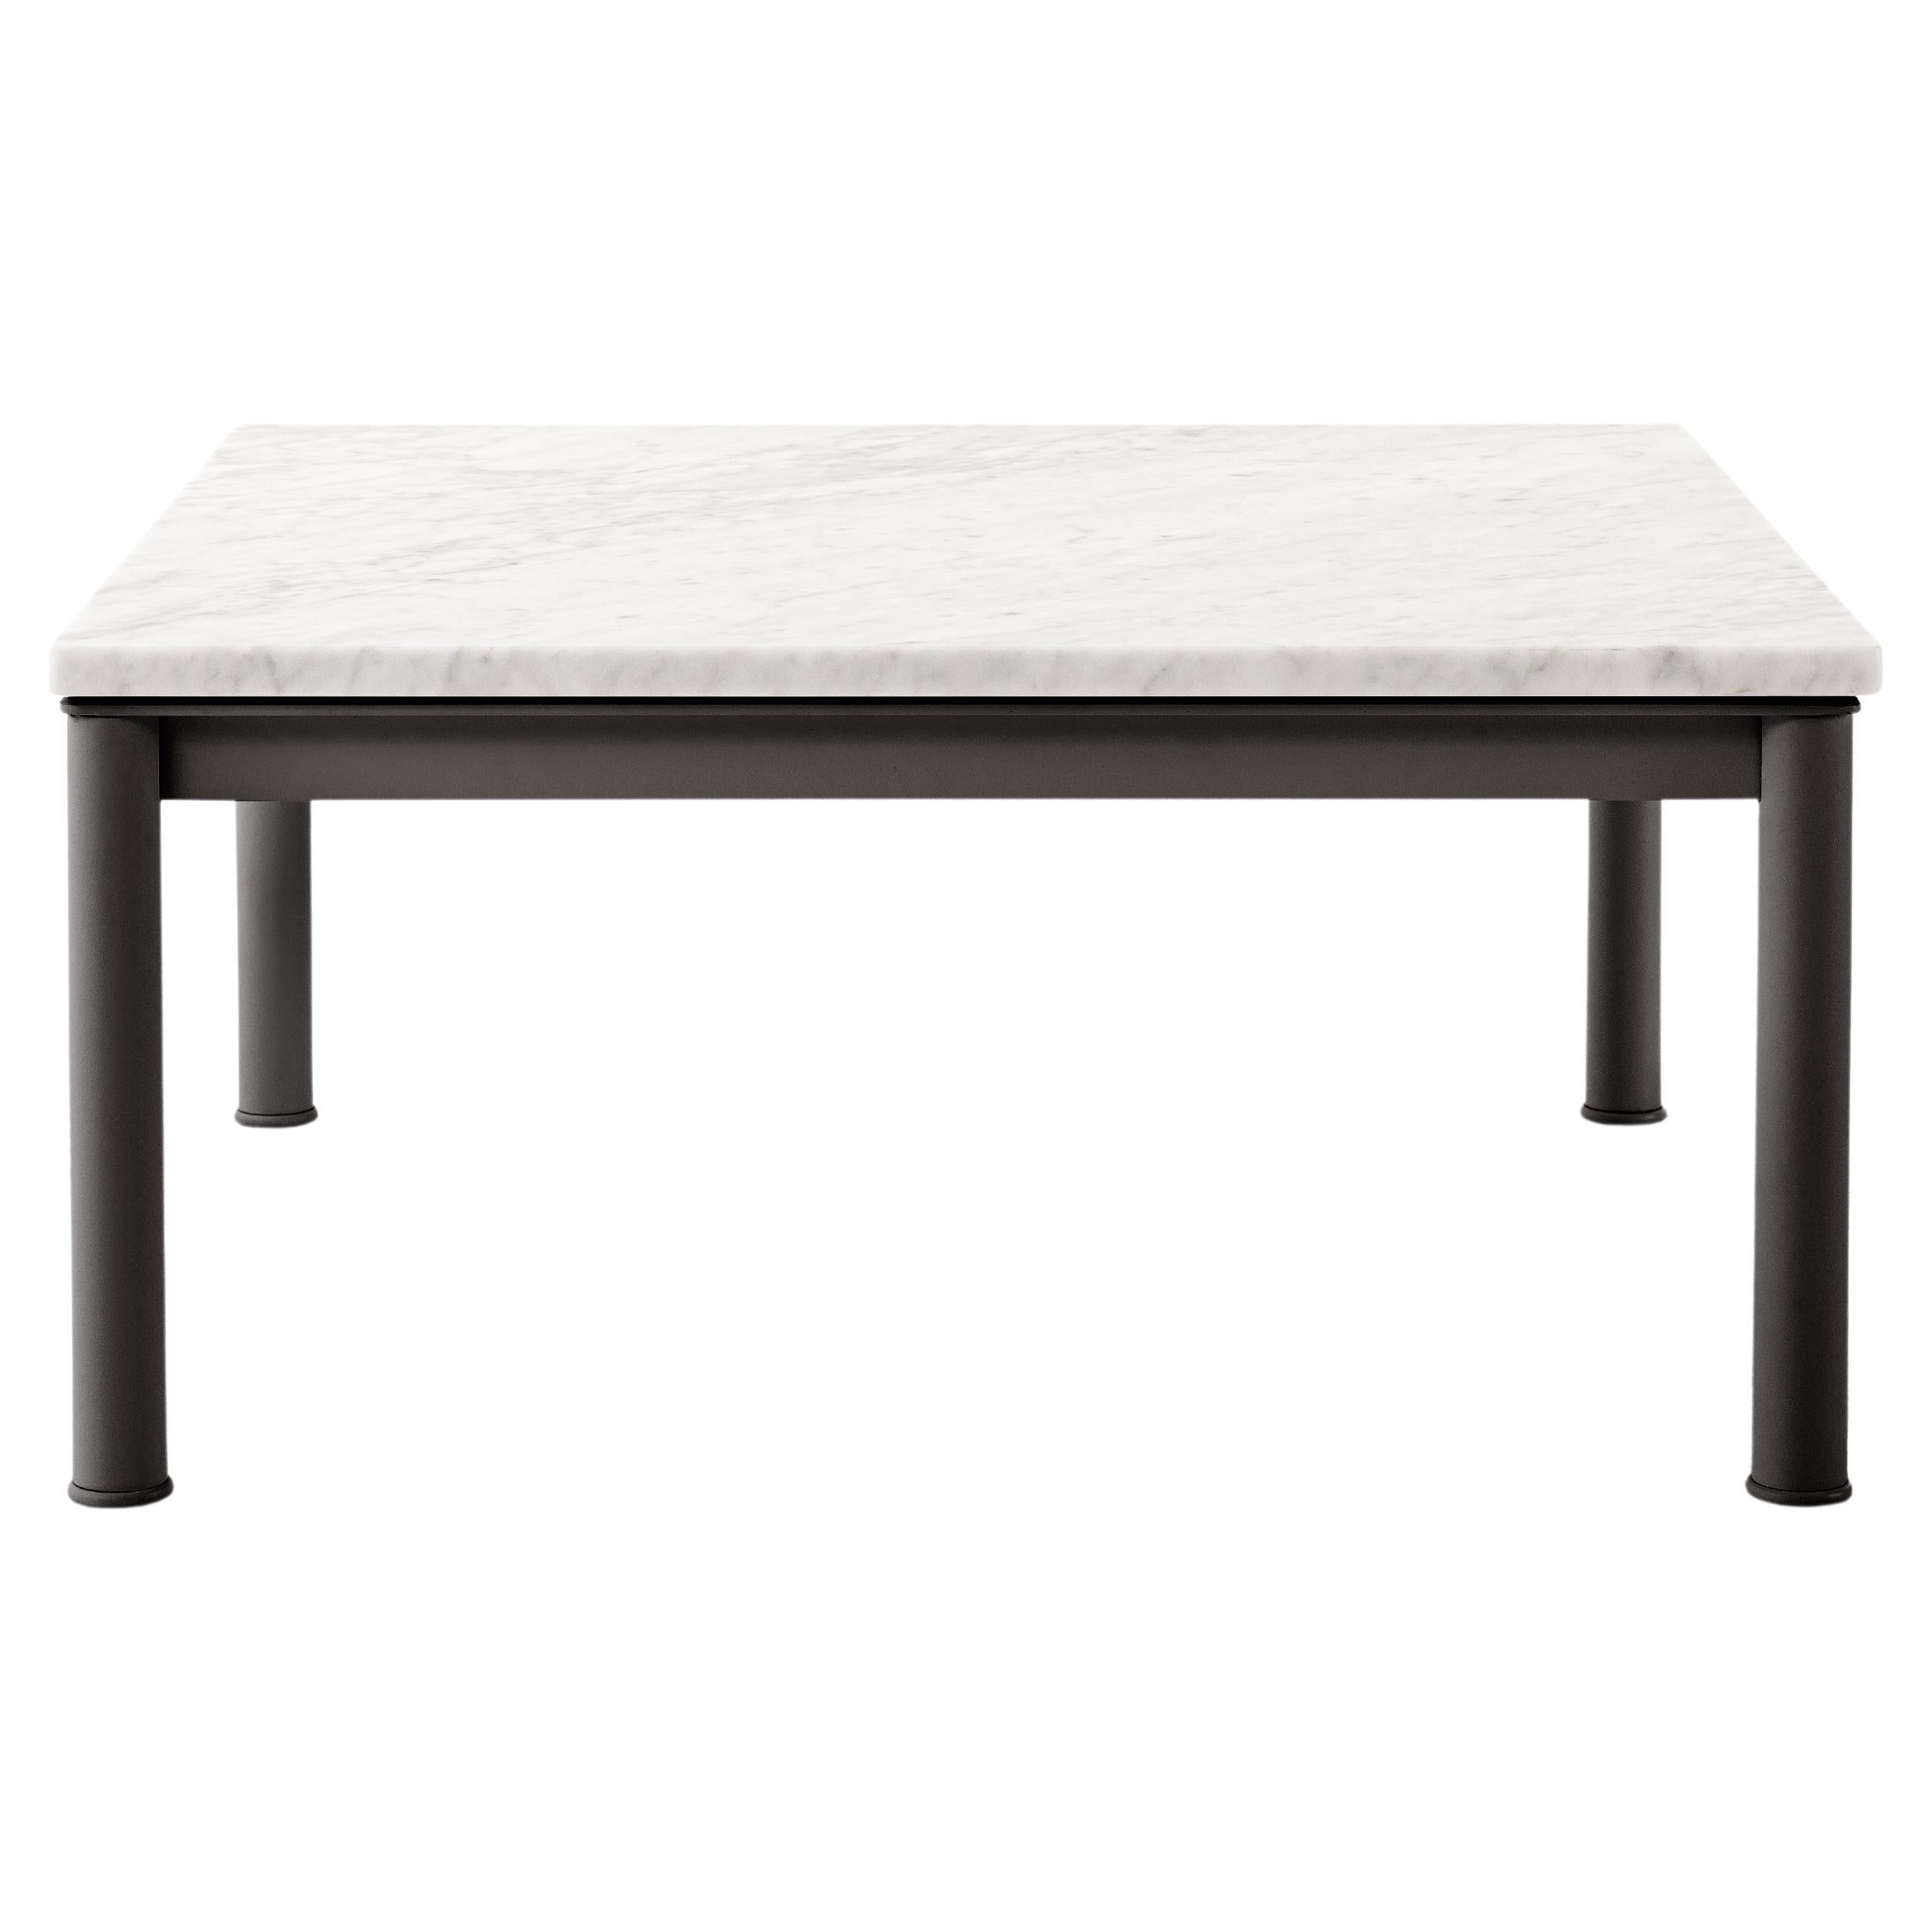 Viereckiger Tisch LC10 aus strukturiertem Elfenbein im Freien, entworfen von Le Corbusier, Pierre Jeanneret und Charlotte Perriand im Jahr 1929. Sie wurde 1984 von Perriand wieder aufgegriffen und ein Jahr später von Cassina neu aufgelegt.